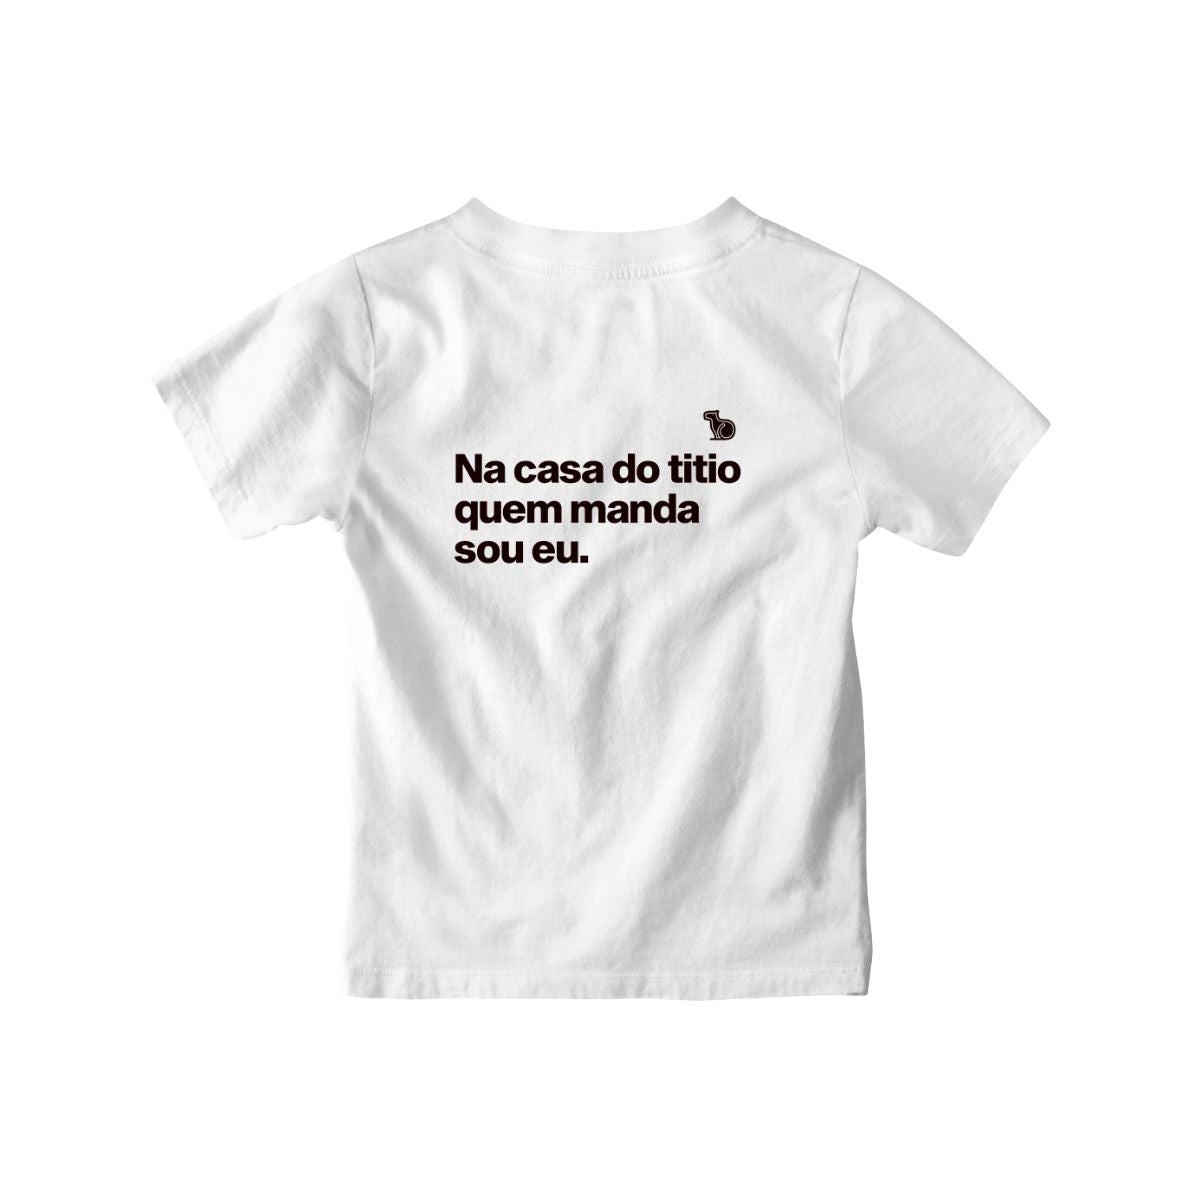 Camiseta infantil branca com a frase "na casa do titio quem manda sou eu."